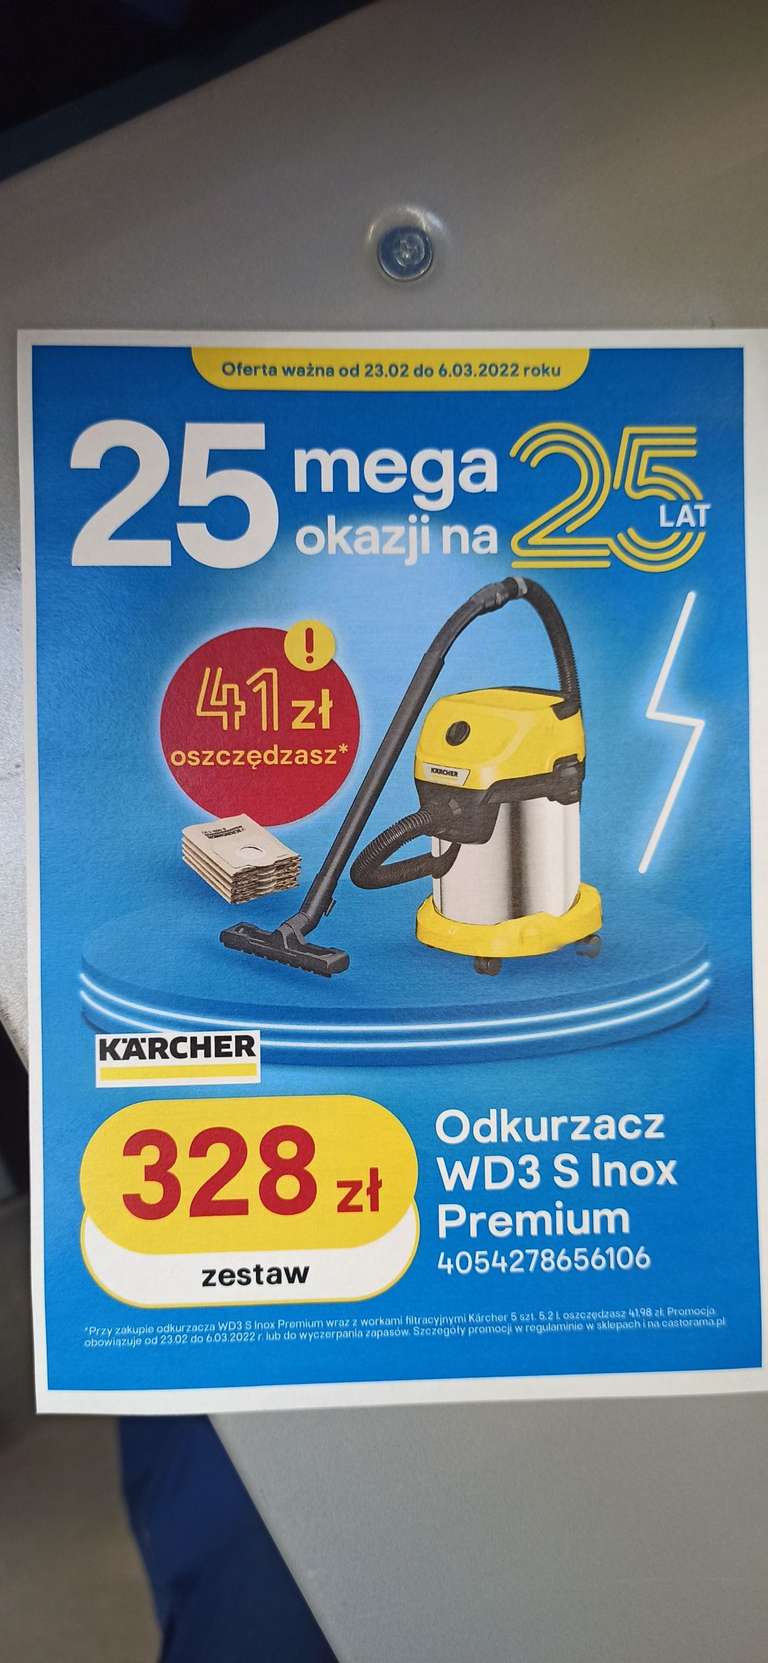 Odkurzacz Karcher WD3 Premium Inox + filtr + 5szt worków Karcher za 1zł